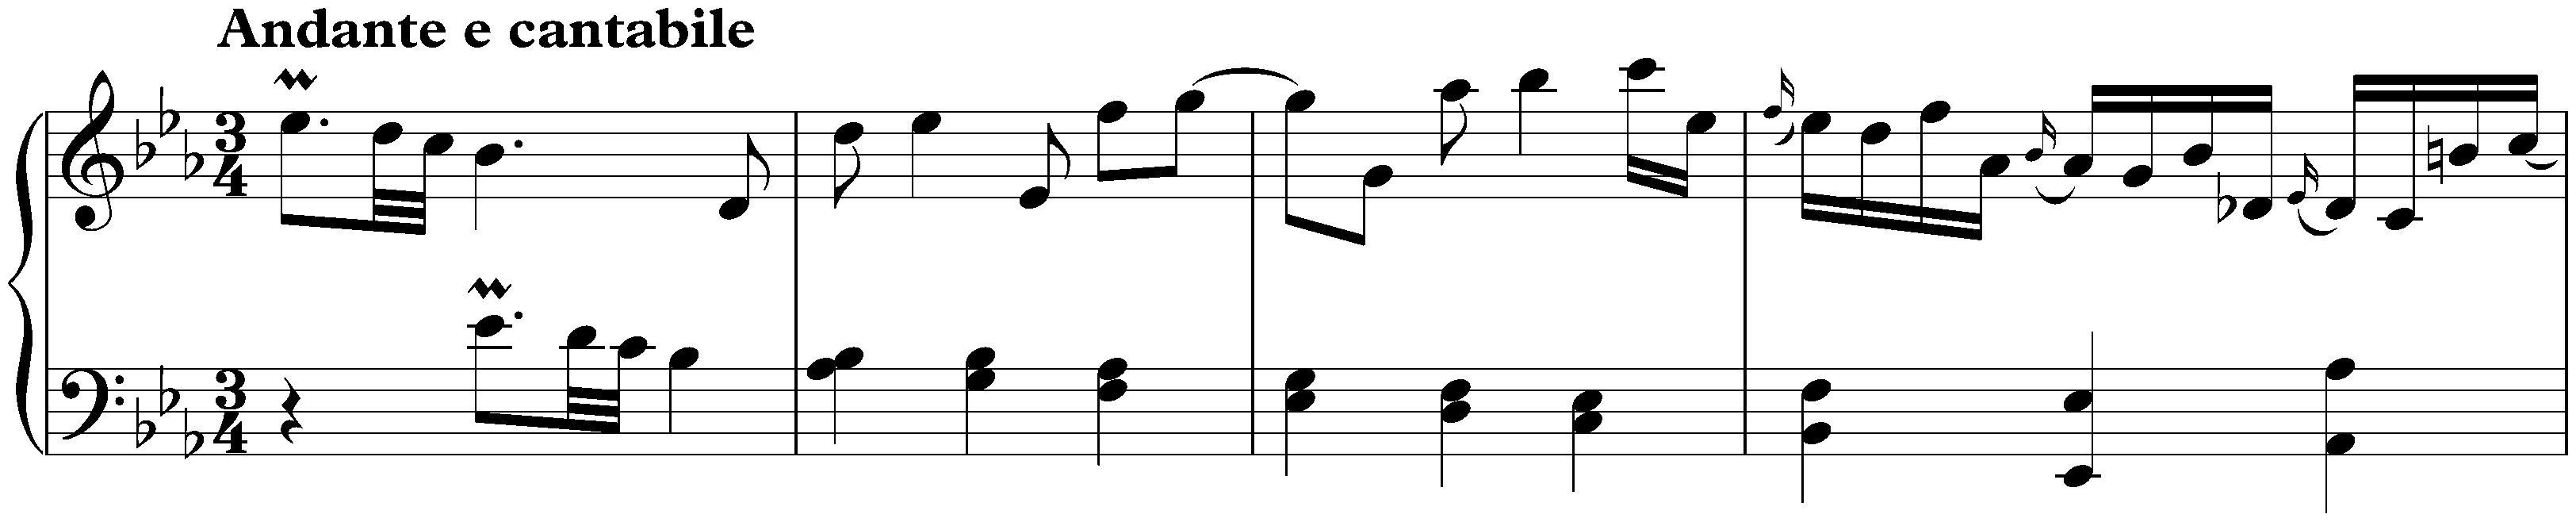 Sonata in E-flat major, K. 474